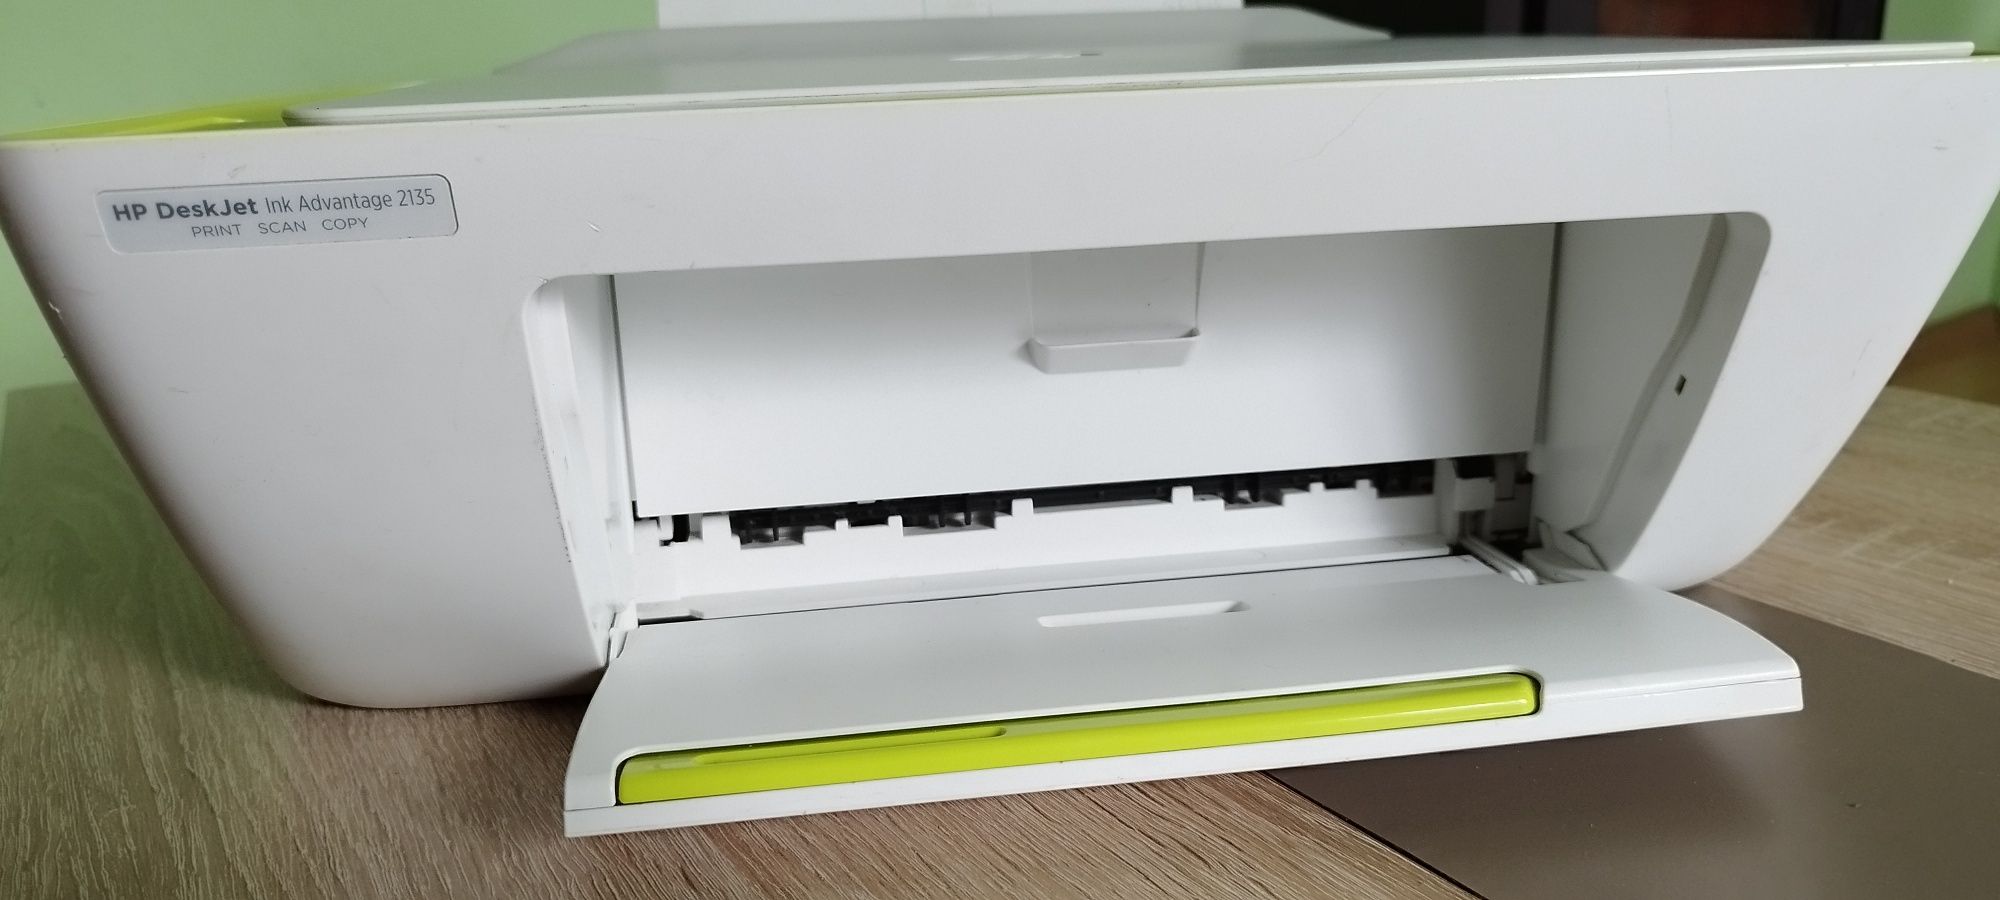 Vand imprimanta HP DeskJet Ink Advantage 2135